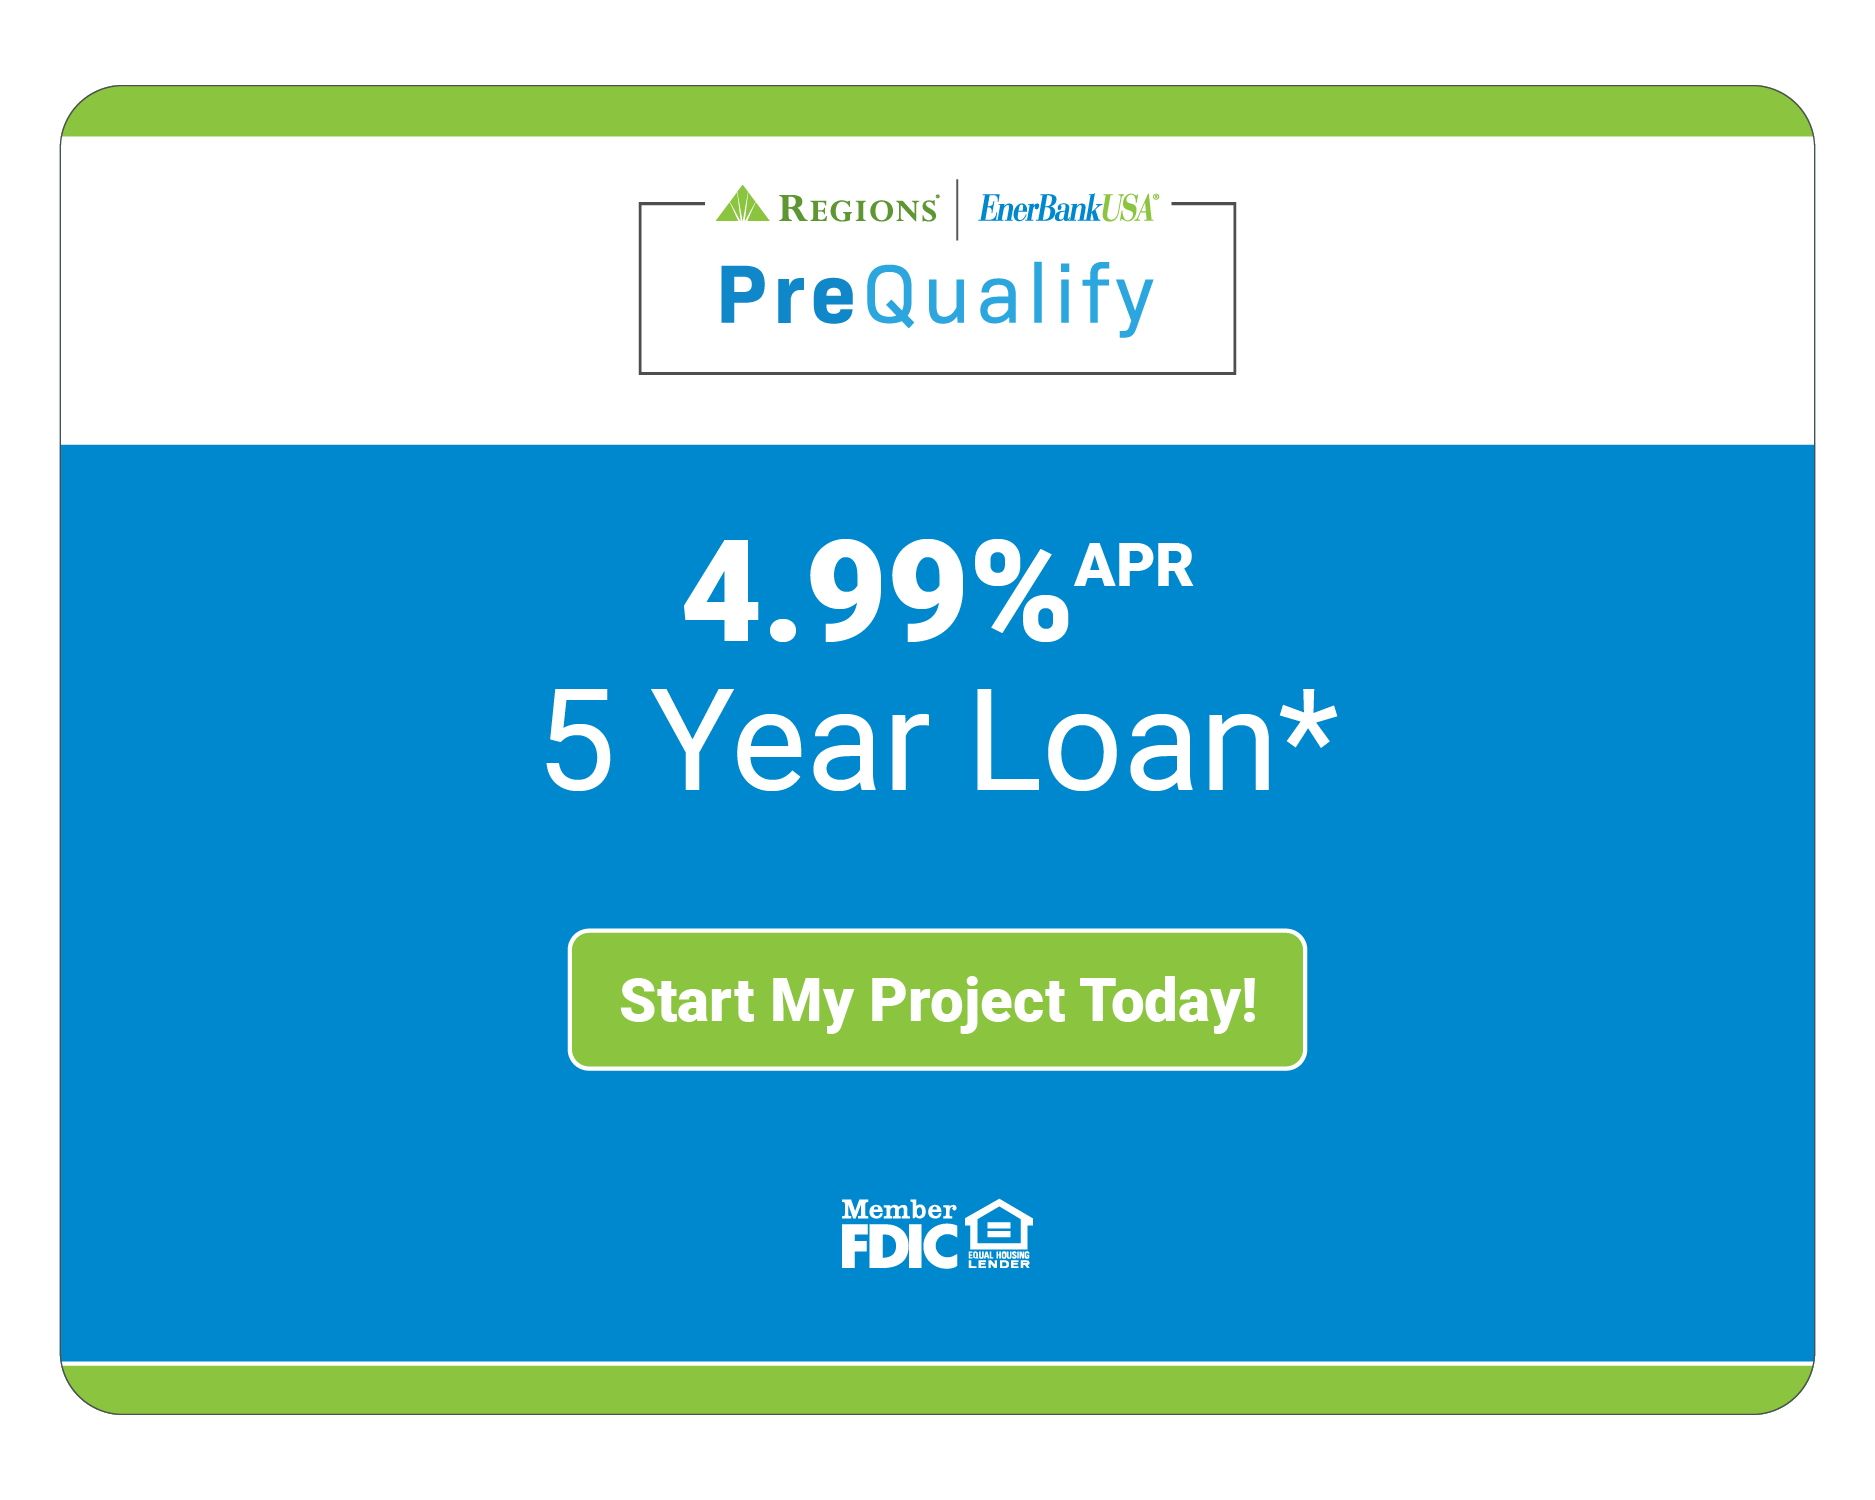 4.99% APR 5 Year Loan